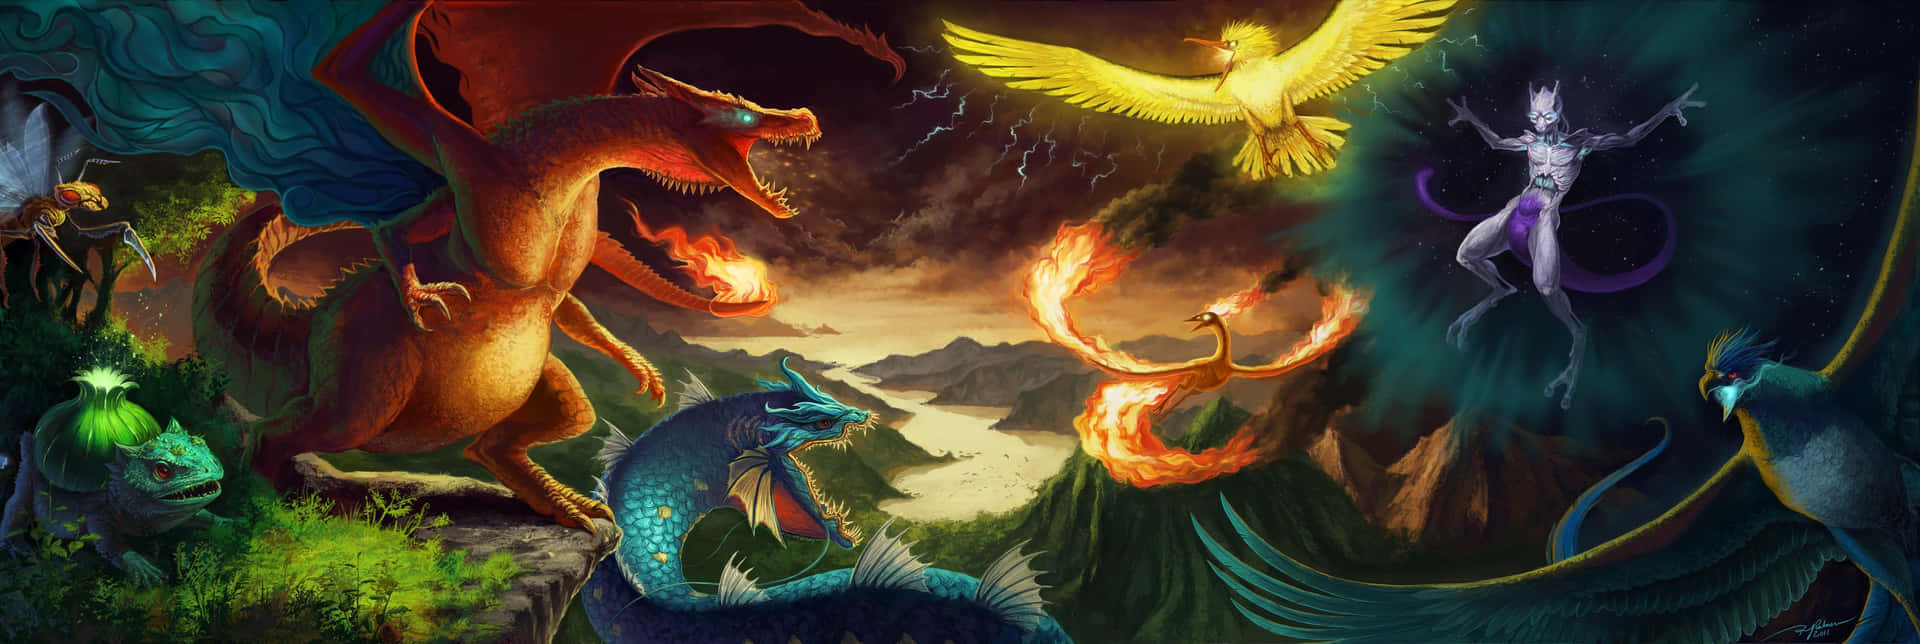 Imagende Batalla De Fuego De Los Pokémon Pájaros Legendarios